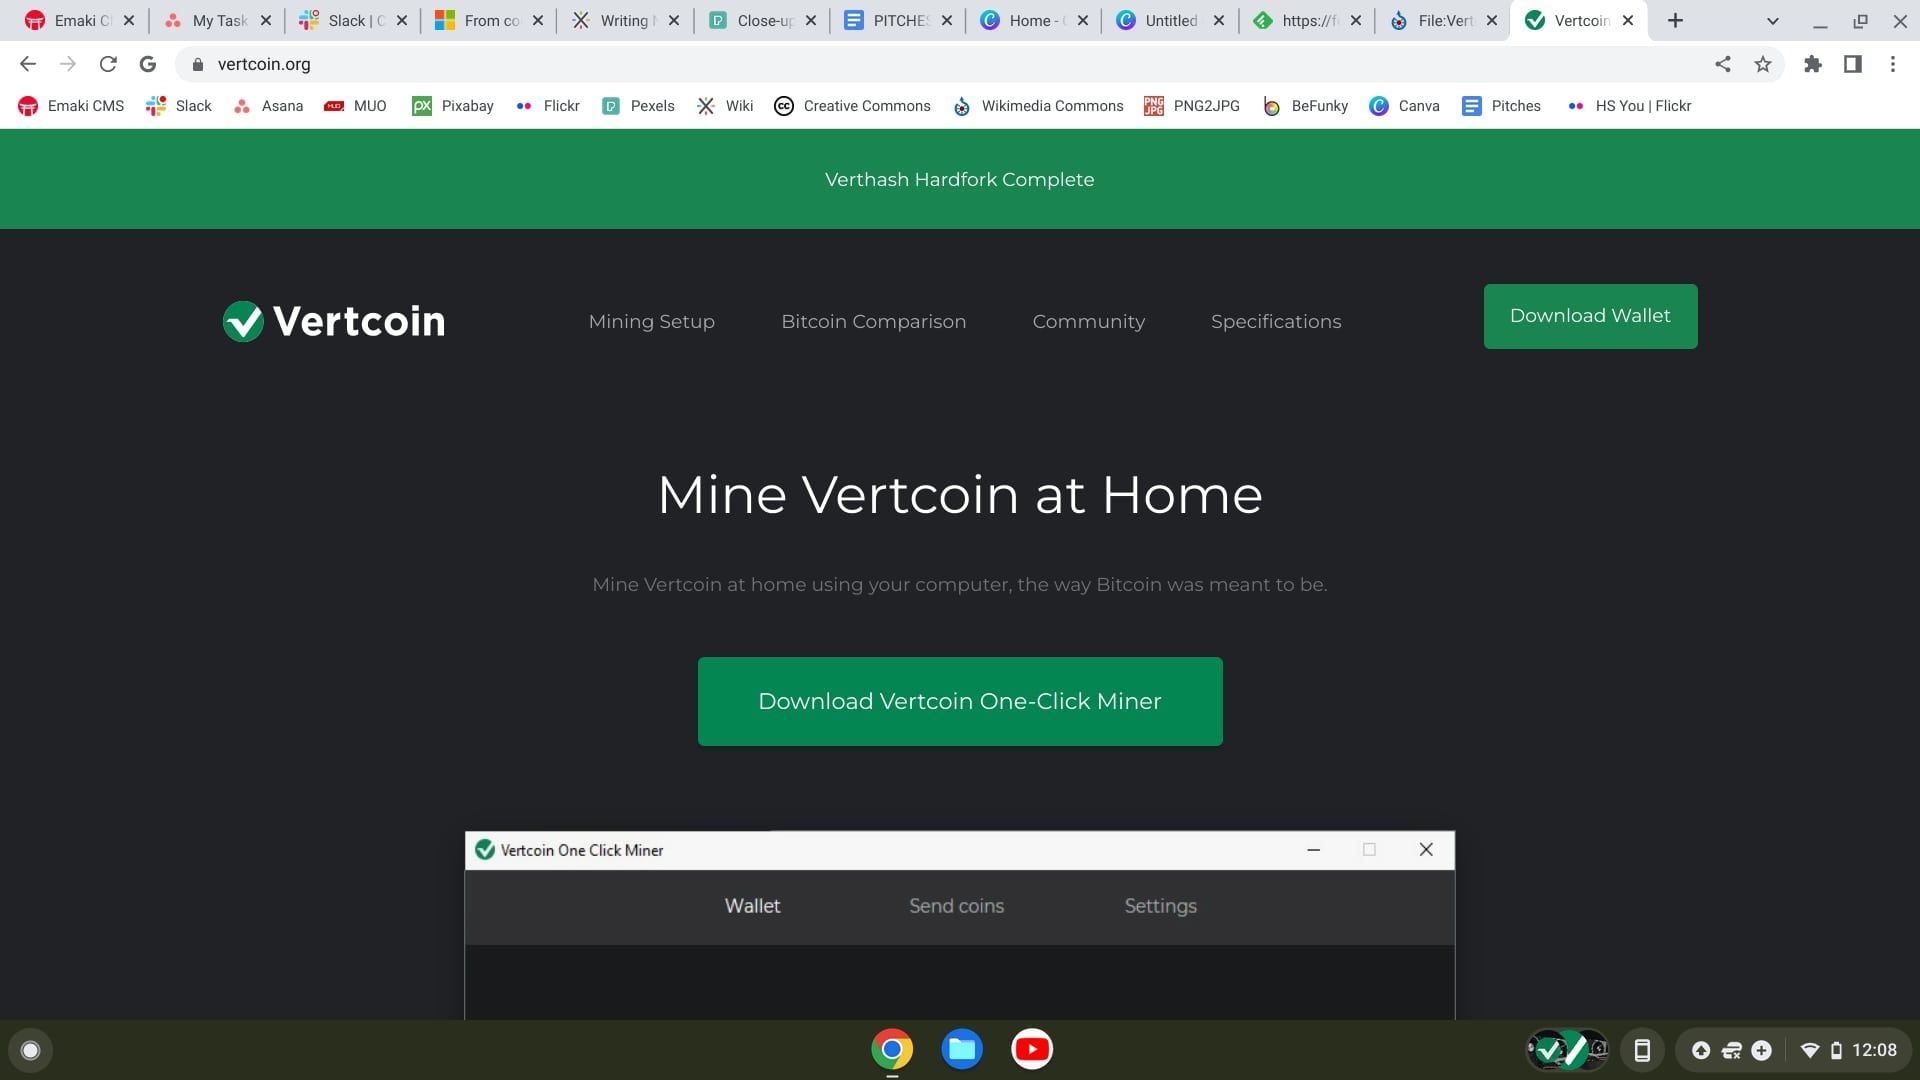 vertcoin website homepage screenshot 